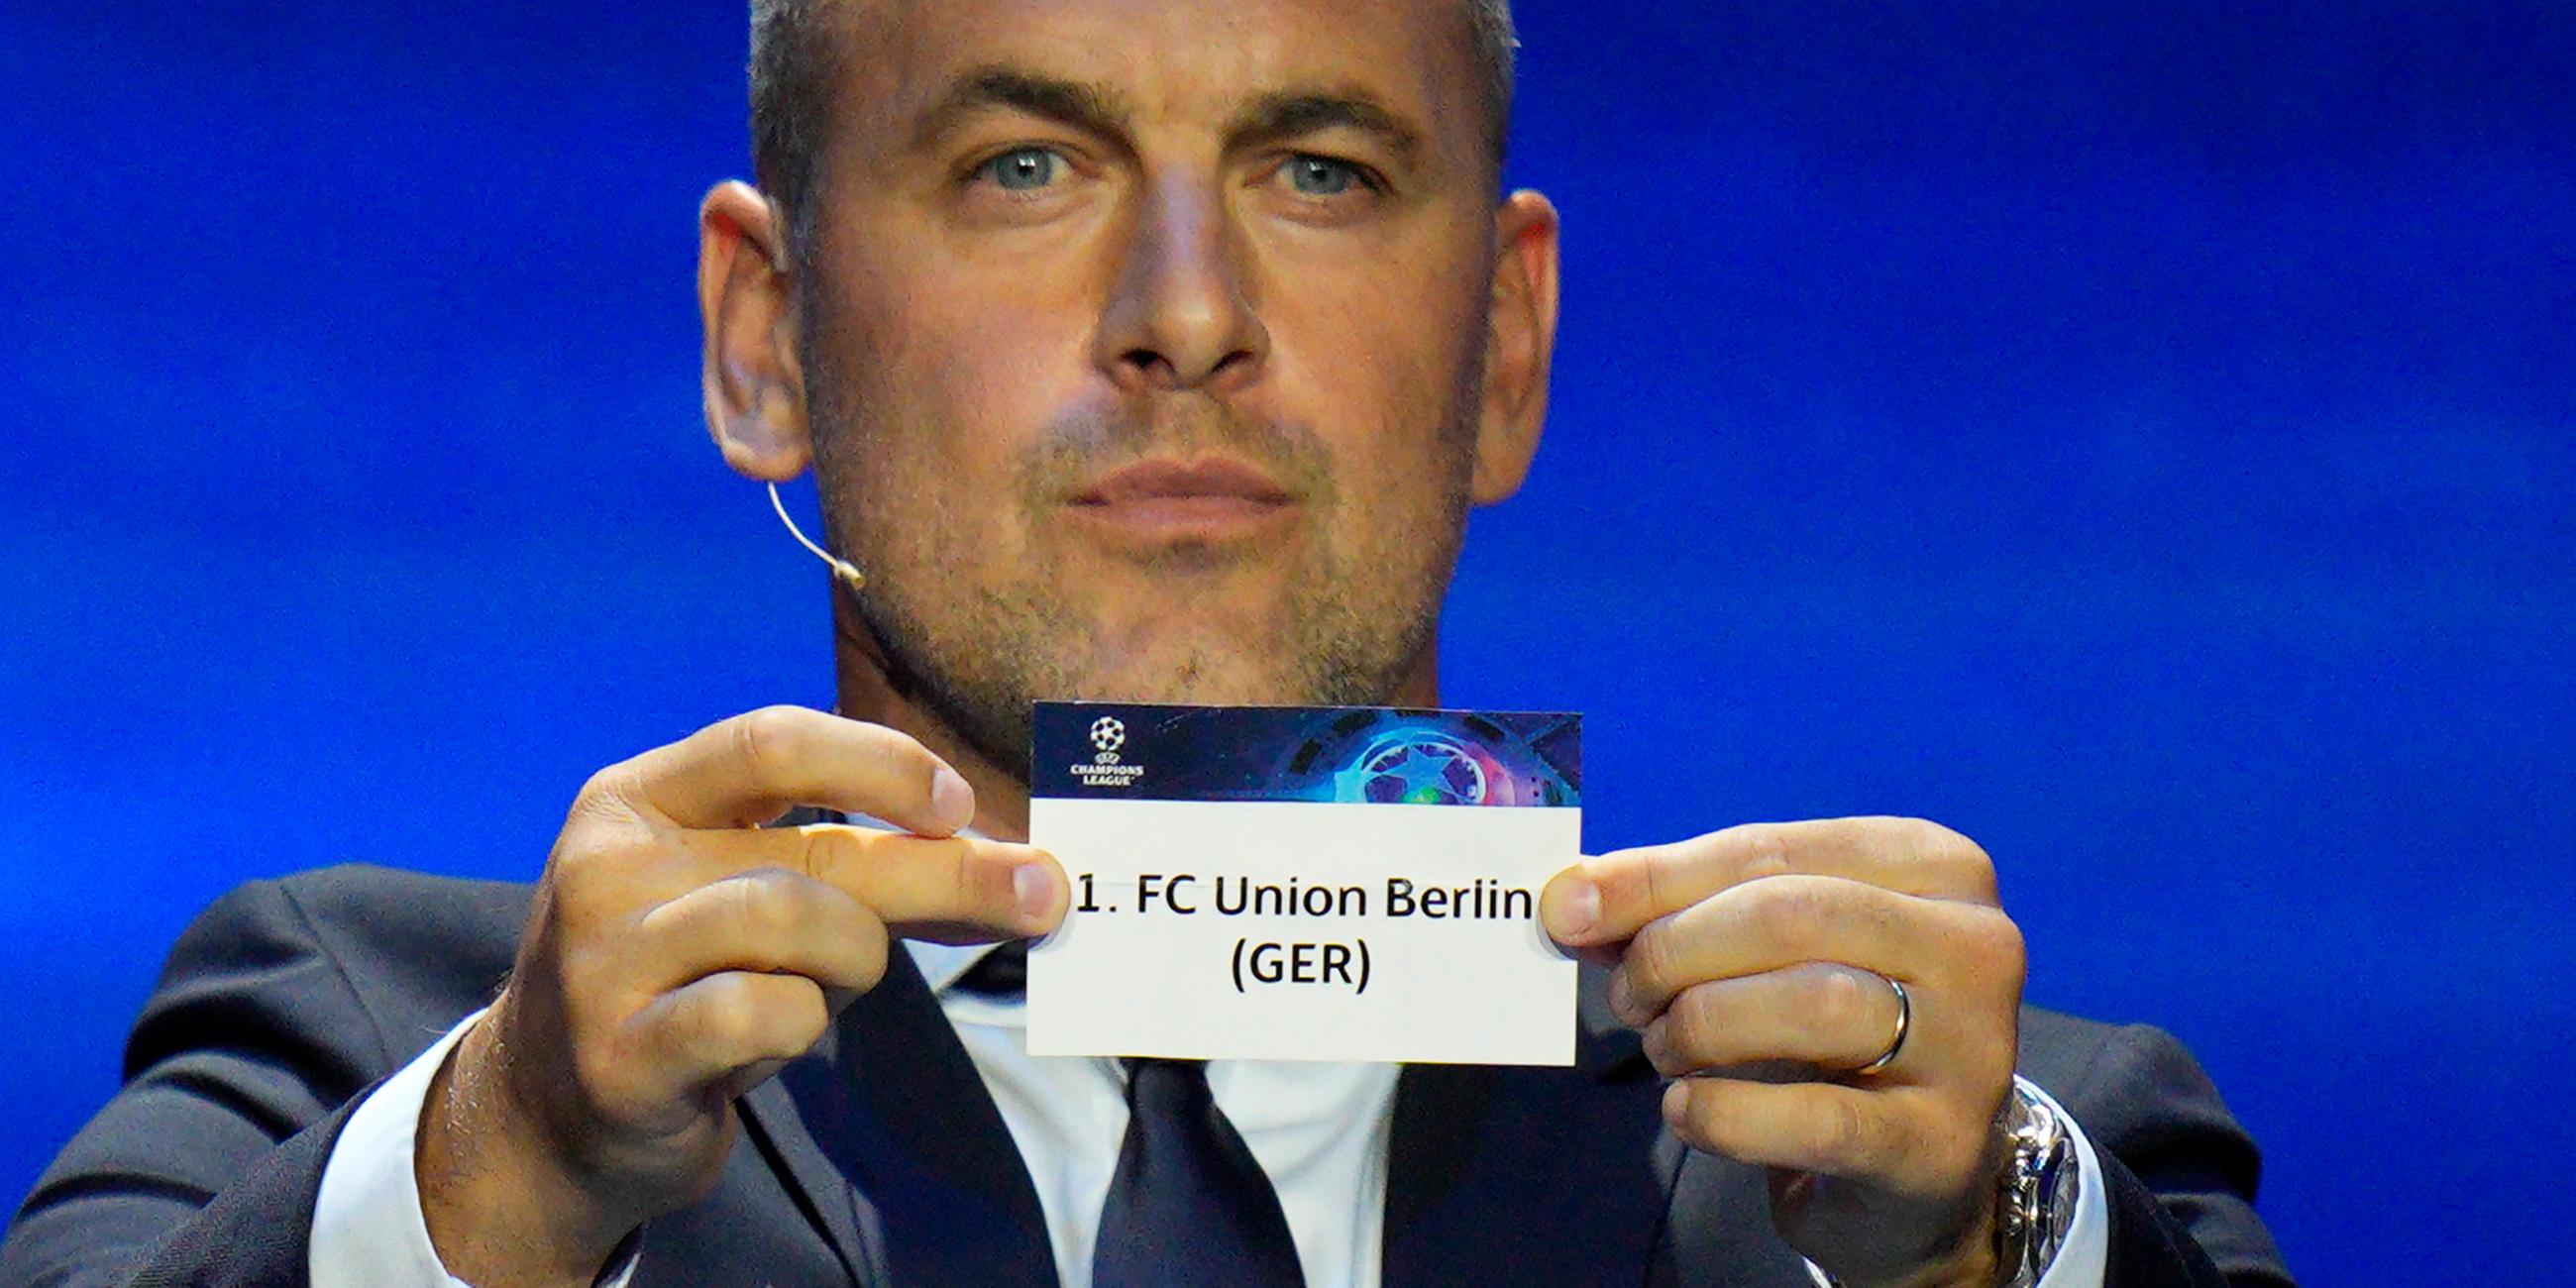 Der ehemalige Fußballstar Joe Cole zeigt ein Ticket des Fußballvereins 1. FC Union Berlin während der Auslosung der Gruppenphase der UEFA Champions League 2023/24.